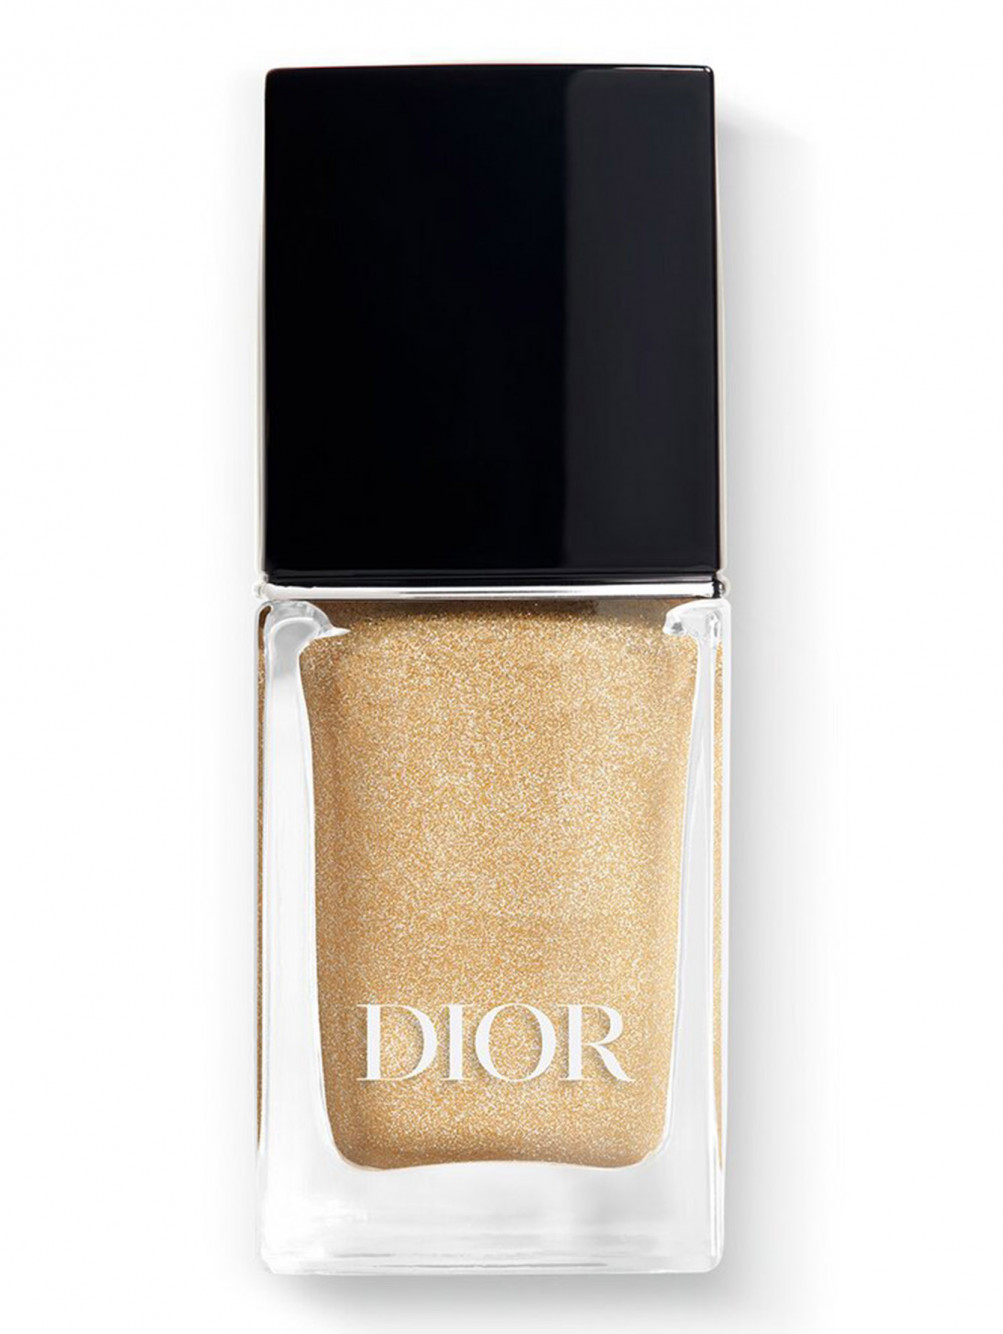 Лак для ногтей с эффектом гелевого покрытия Dior Vernis, 513 Ж'адор, 10 мл - Общий вид